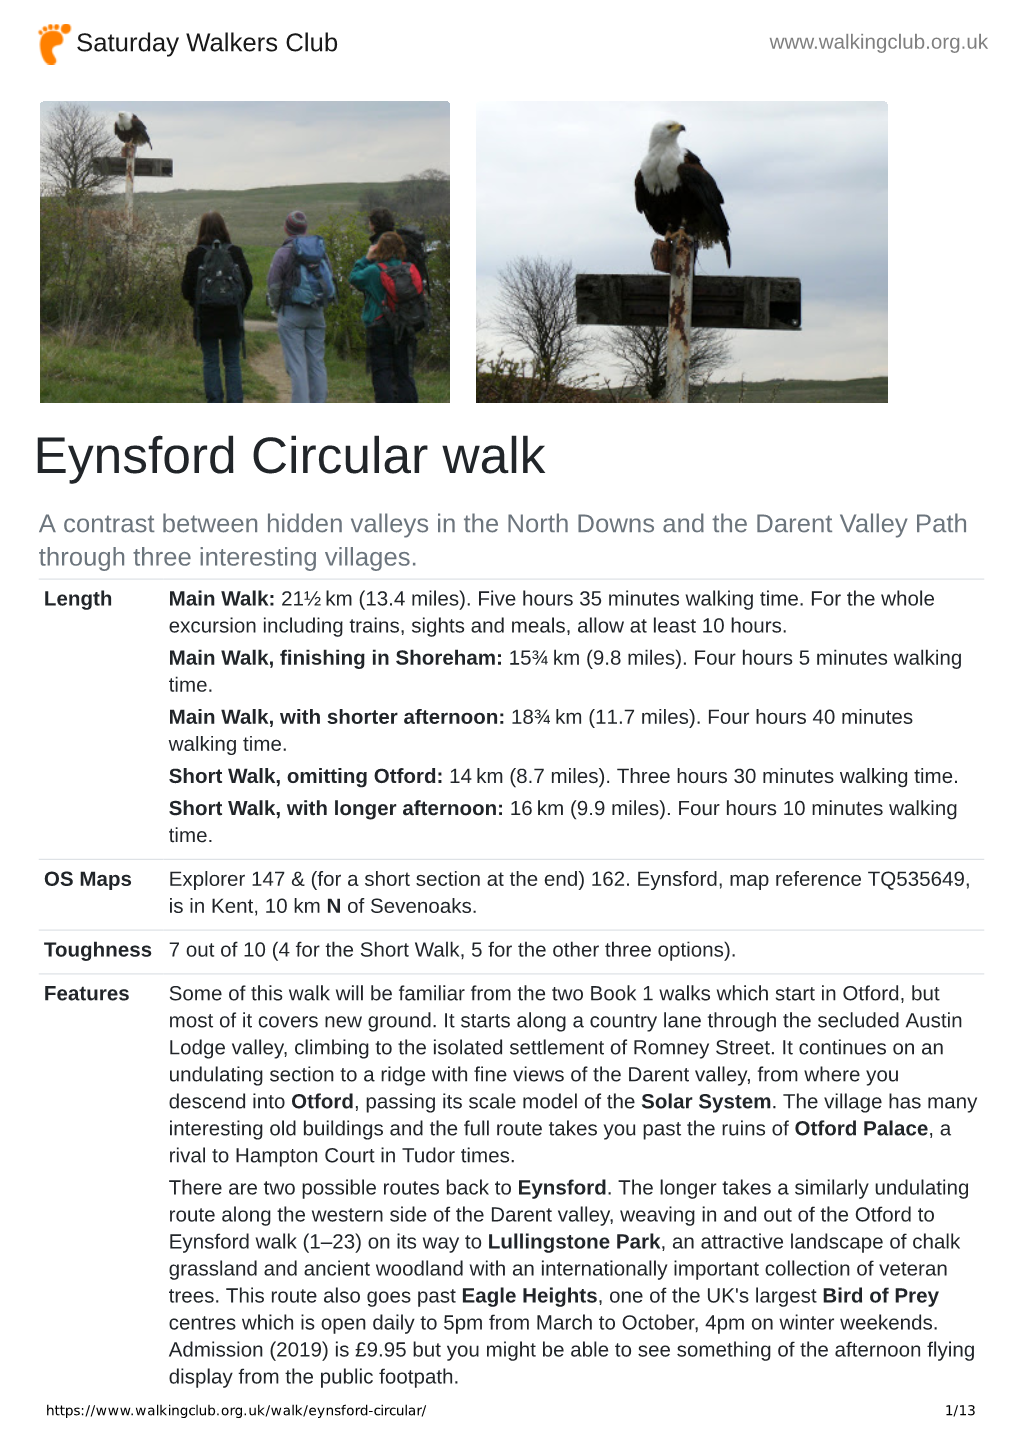 Eynsford Circular Walk